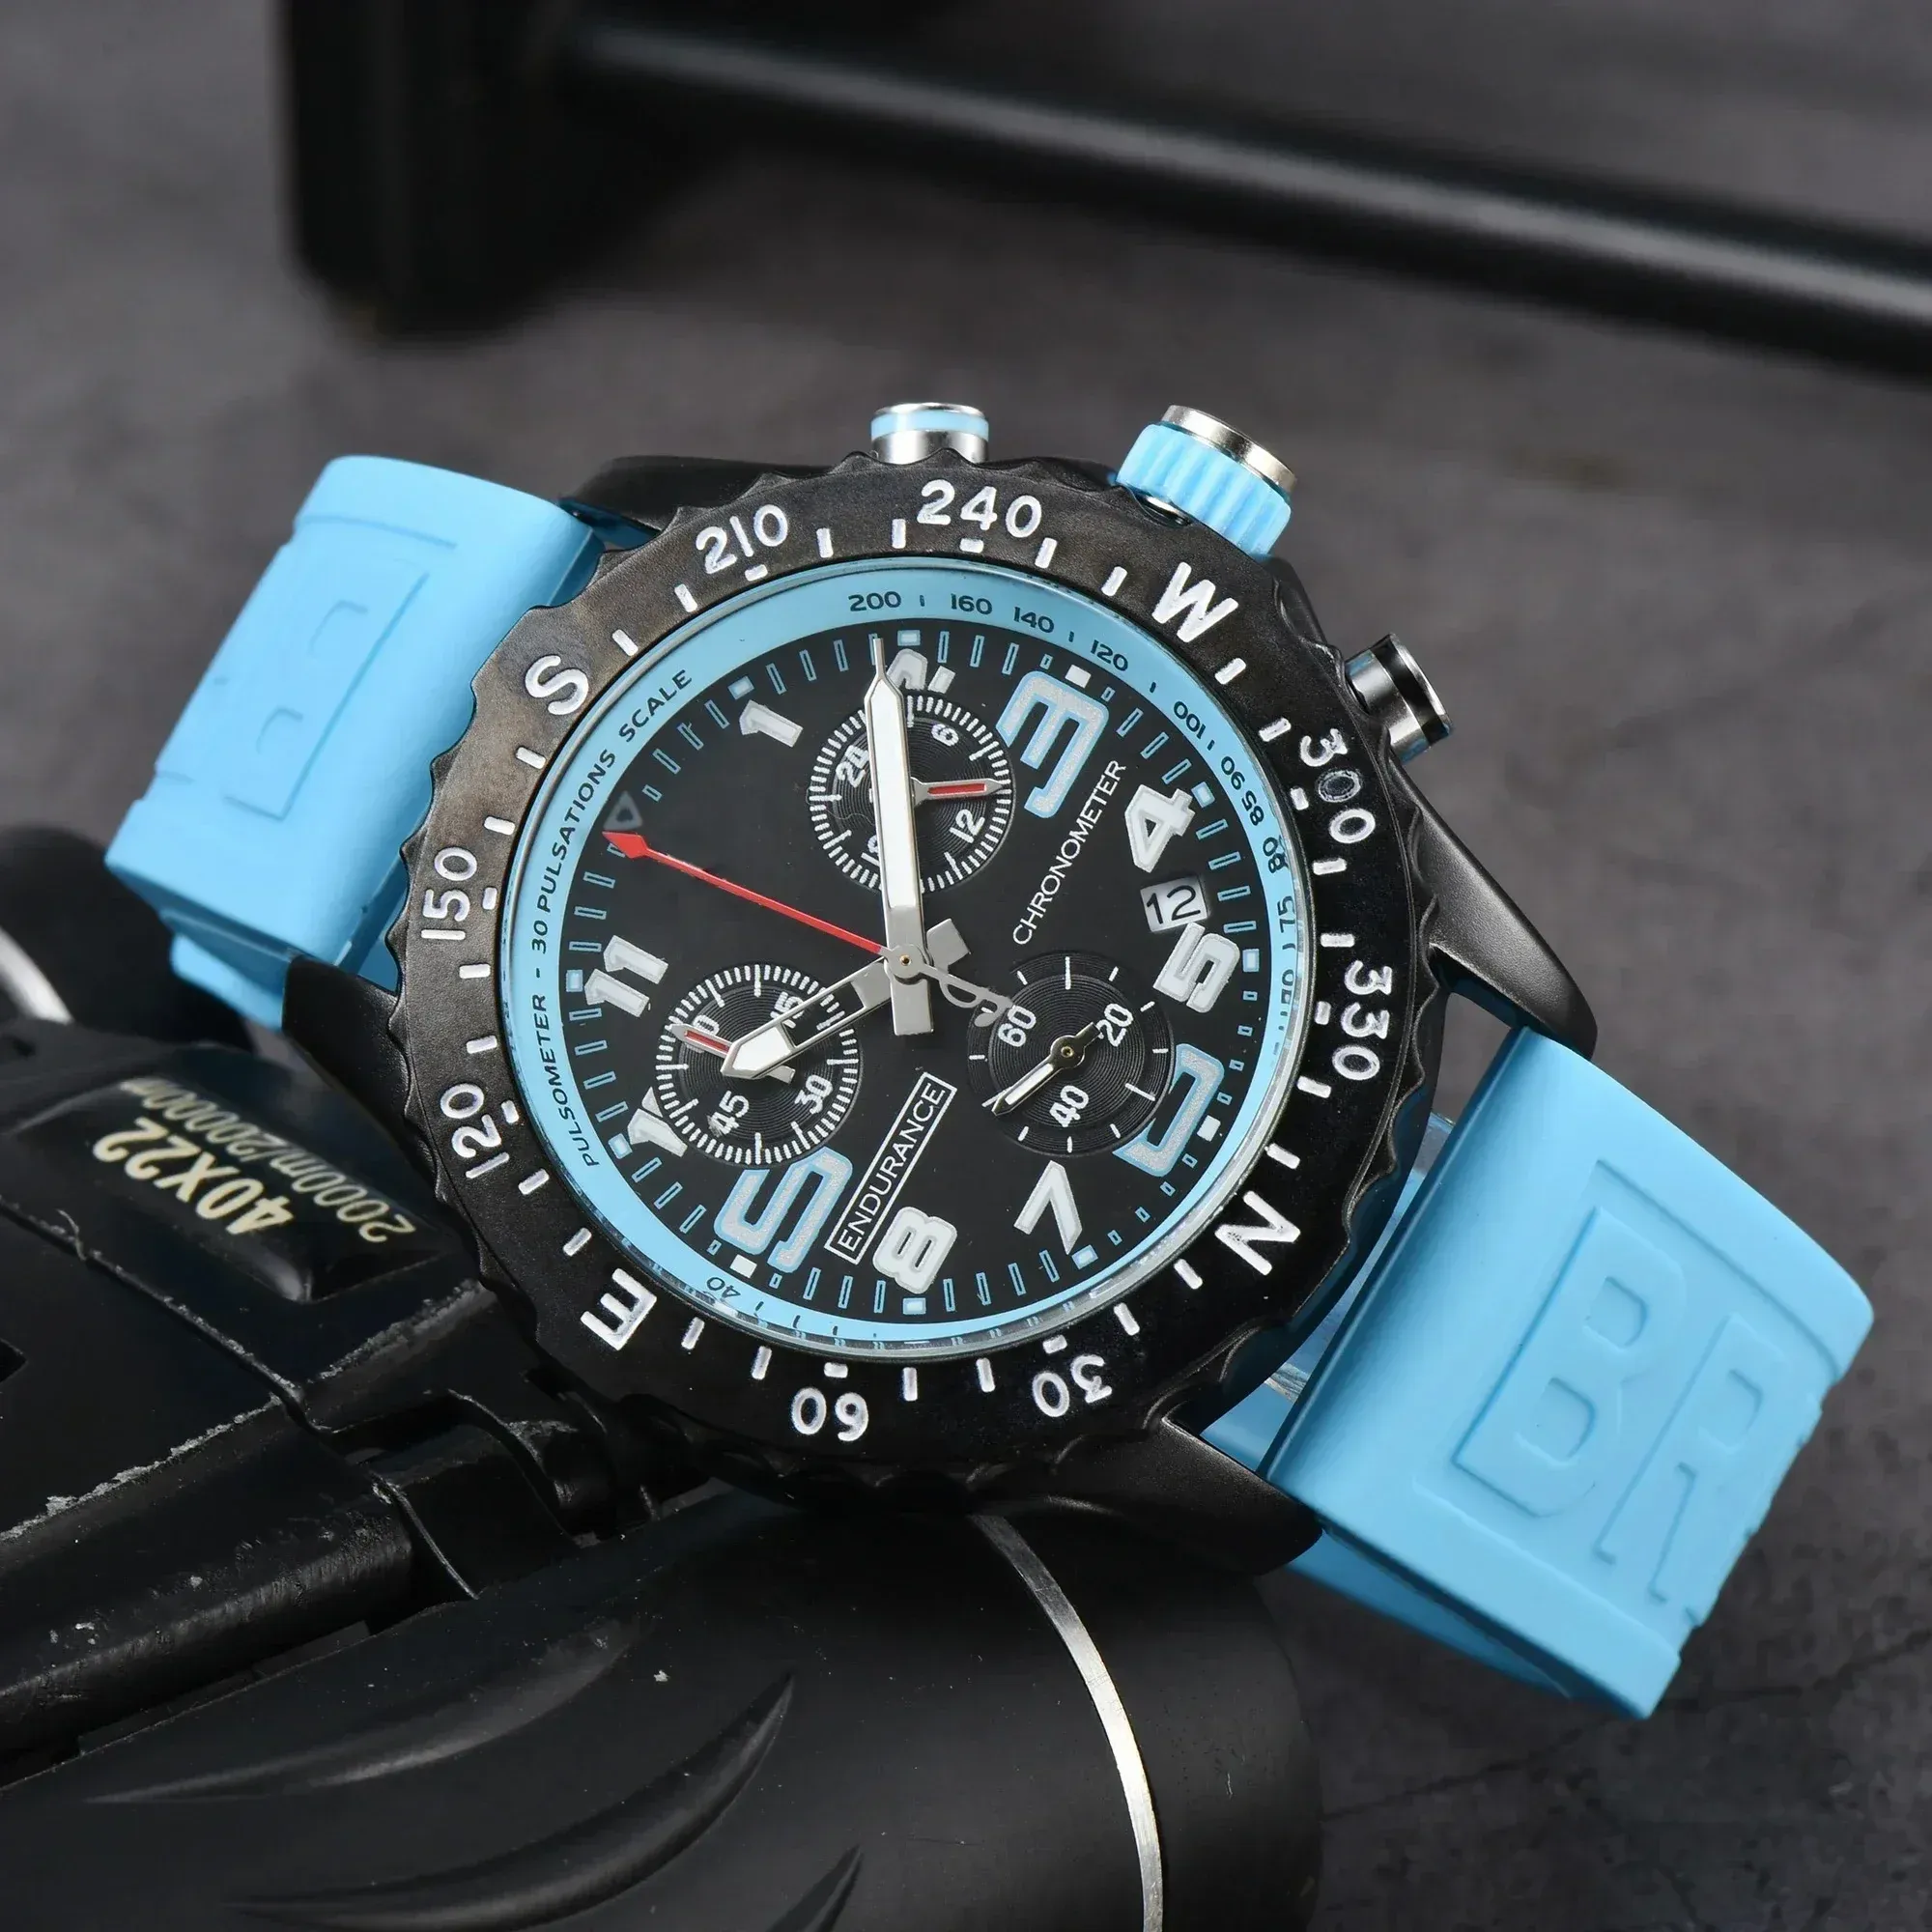 أعلى جودة AAA+ الساعات العلامة التجارية الأصلية للرجال Lristwatch Wristwatch أوتوماتيكي حزام المطاط الساخن الساعات الذكور